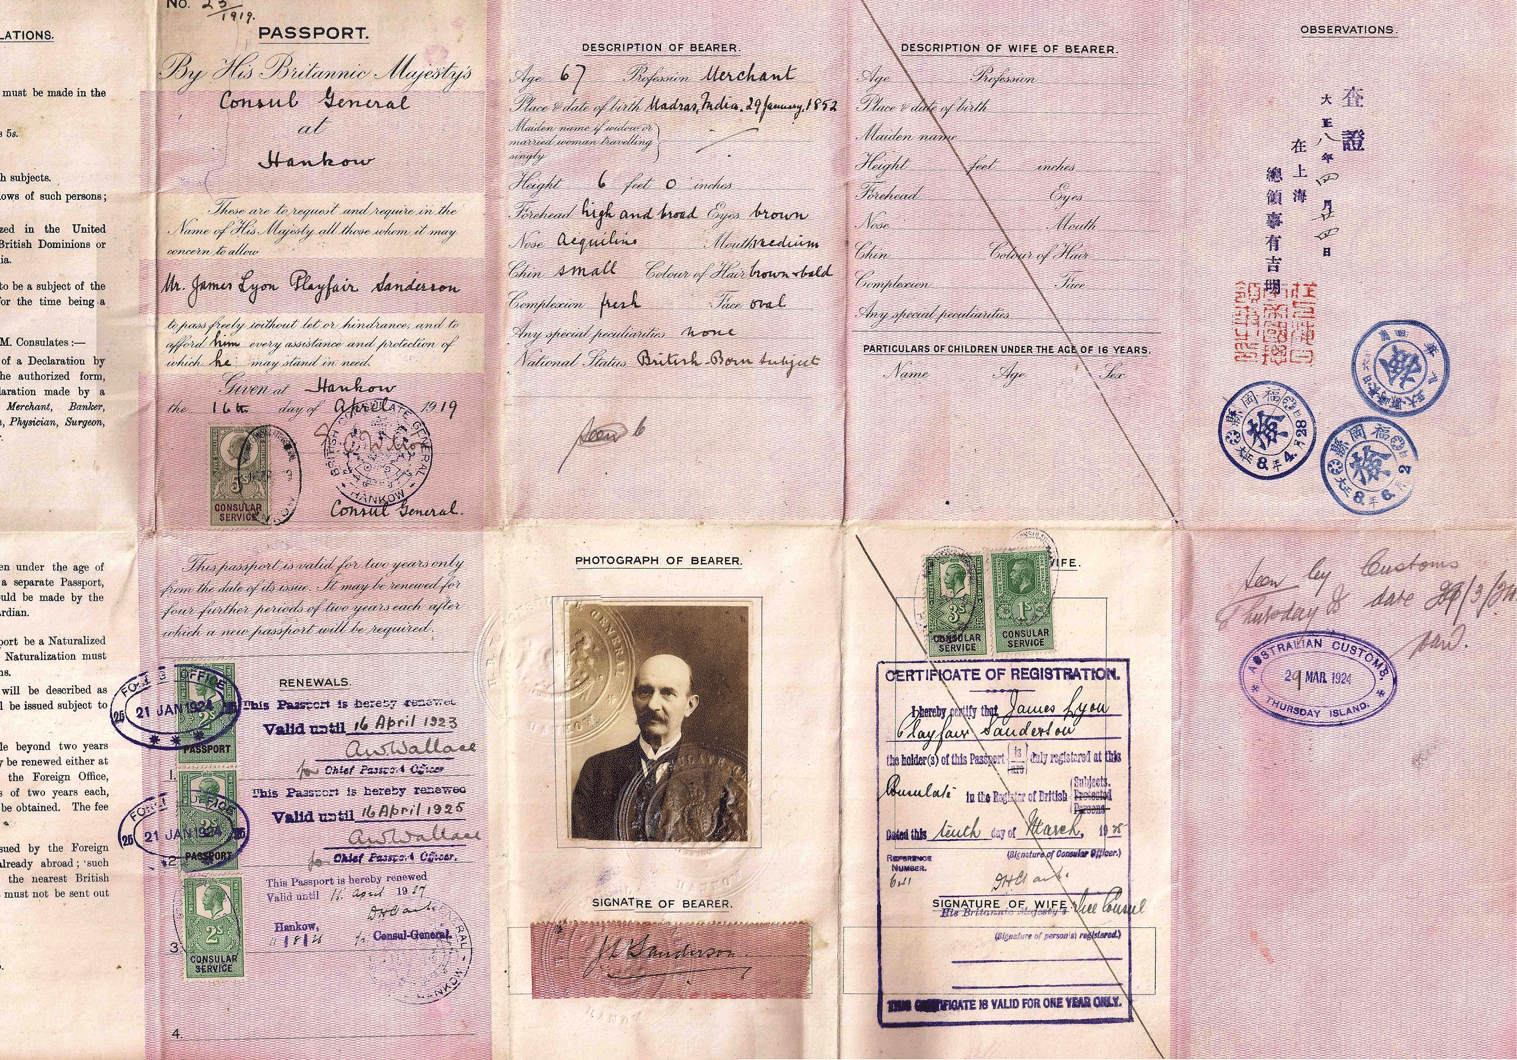 WW1 British passport used for China